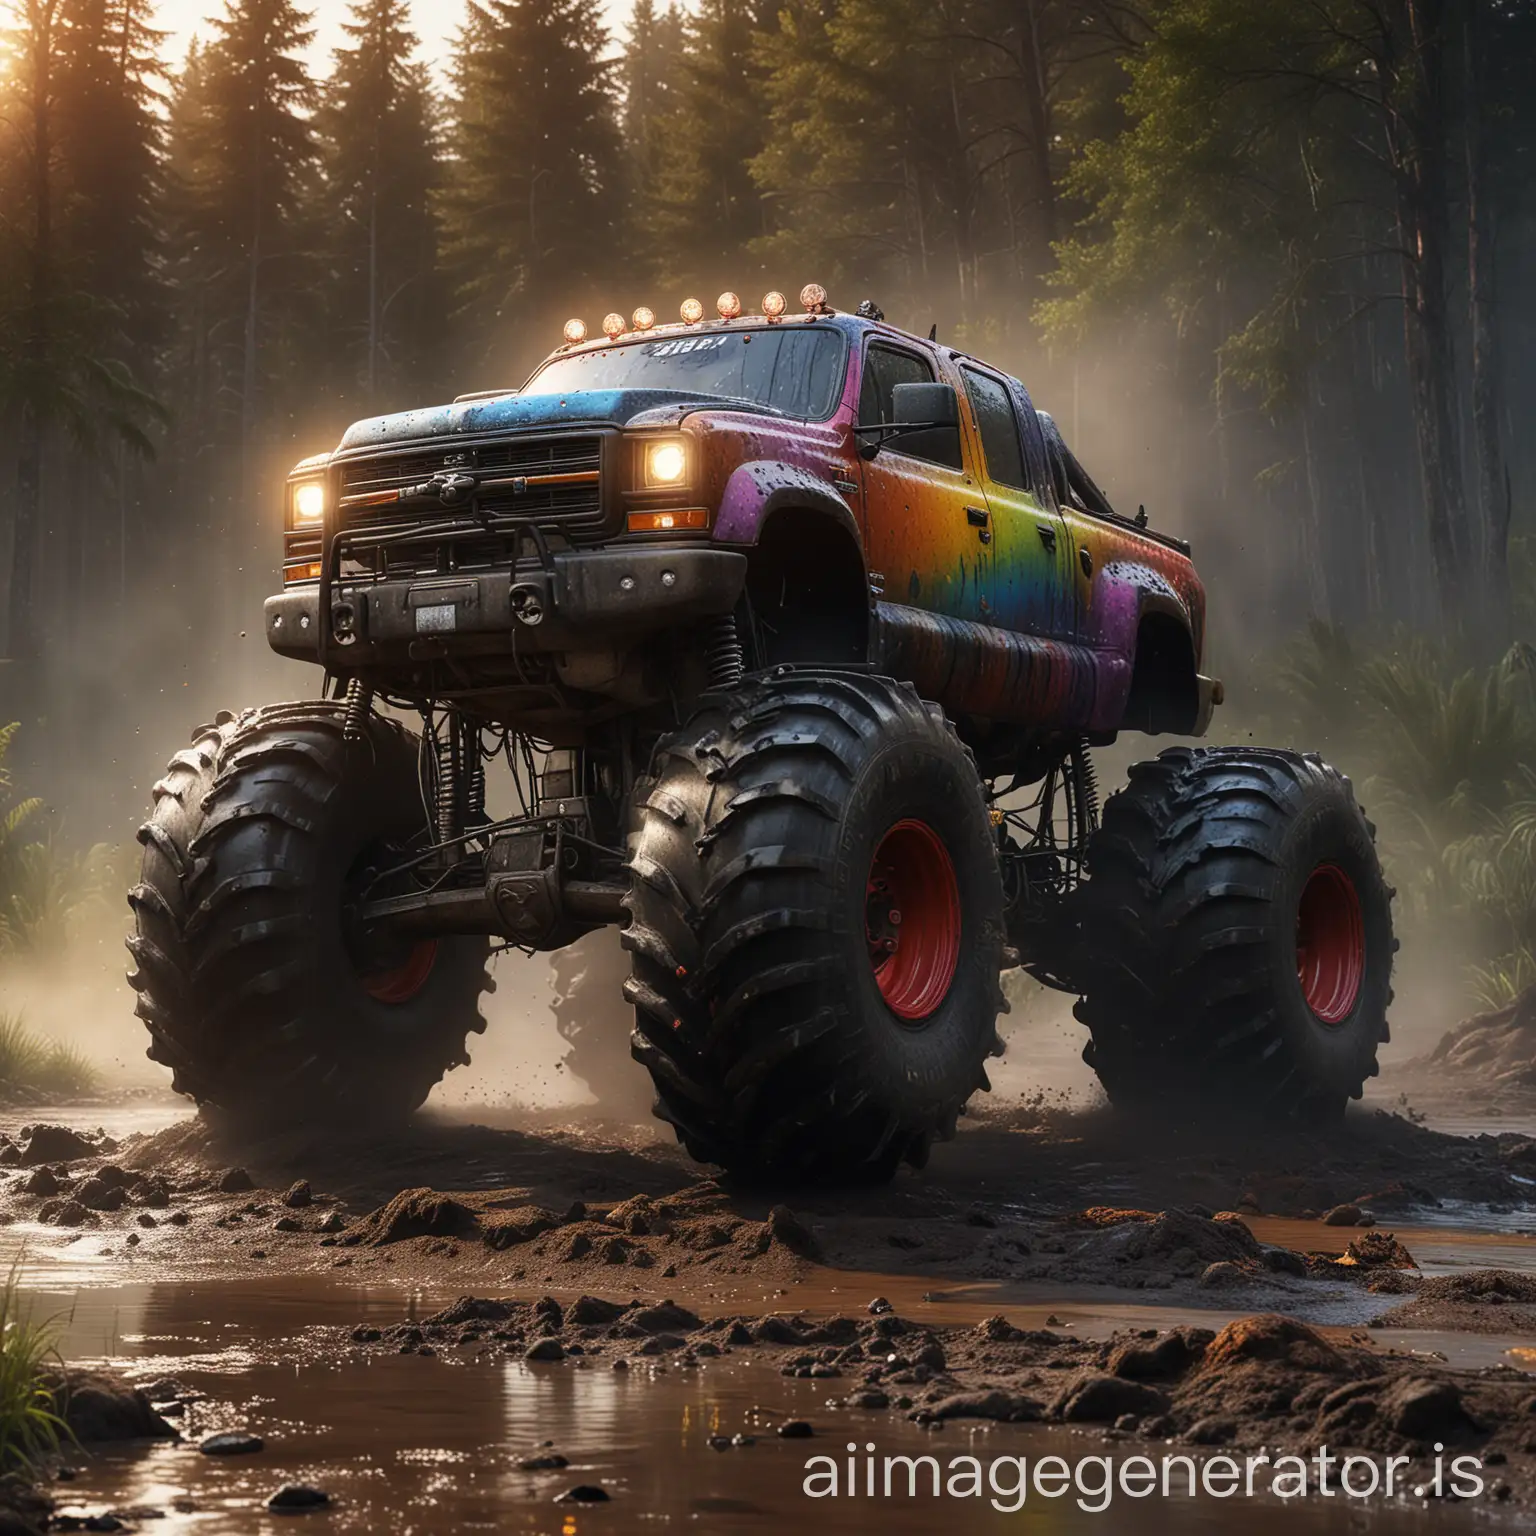 Monster Truck Creature, Dichter Wald, Schlamm, Wassertropfen, Regenbogen, Abgase, Dreck, Sonnenuntergang, reflektierende lichter, hochauflösend, perfekte Qualität, Ultra realistisch, echte Fotografie